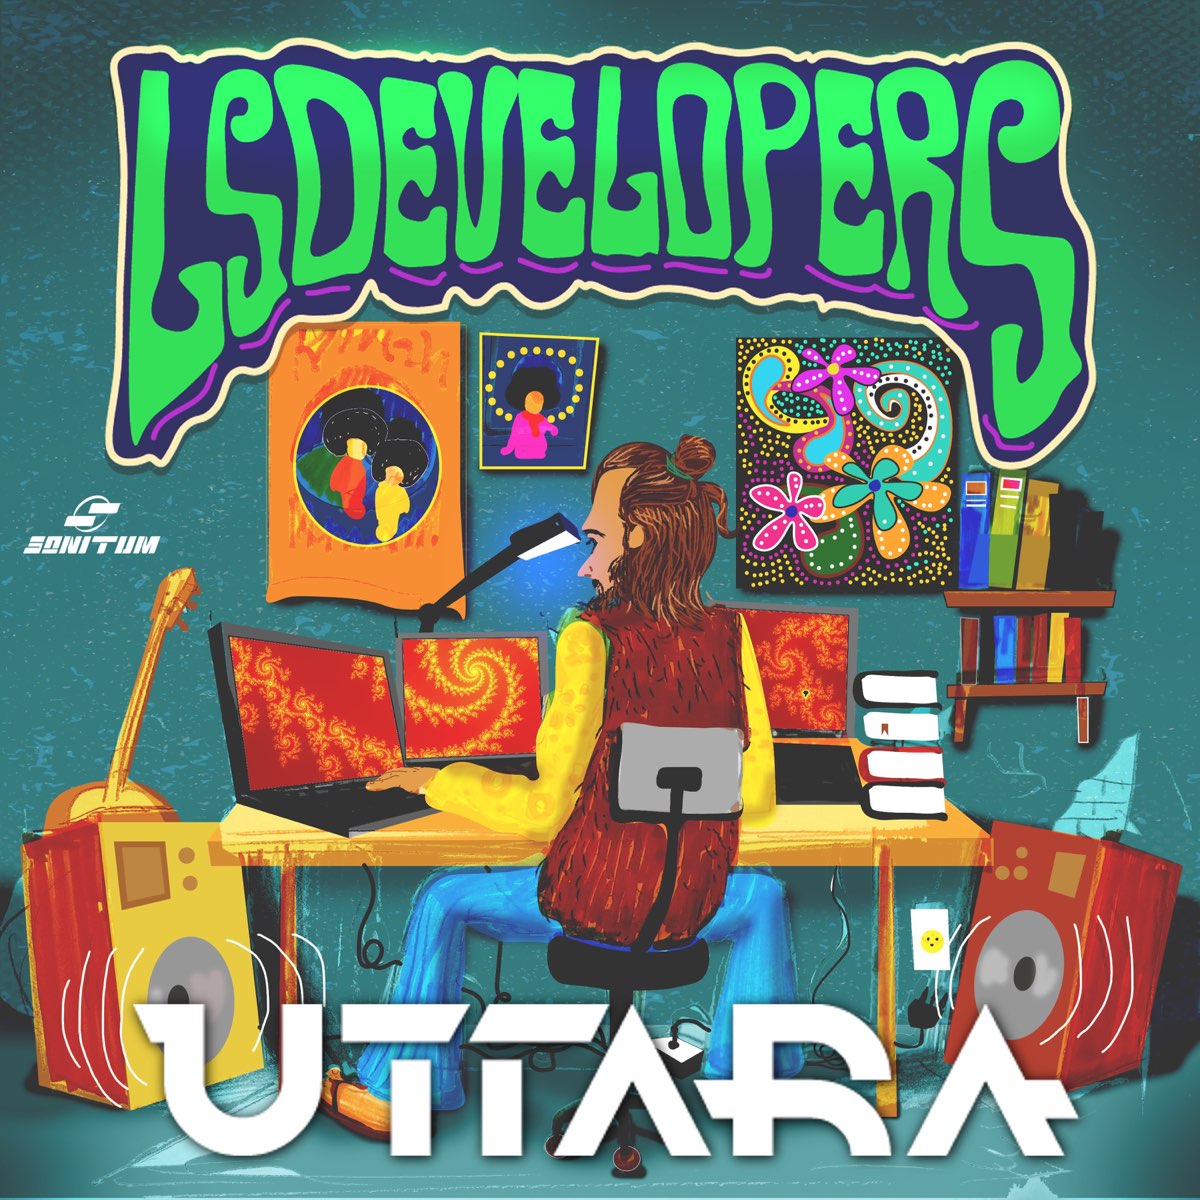 LSDevelopers by Uttara on Apple Music